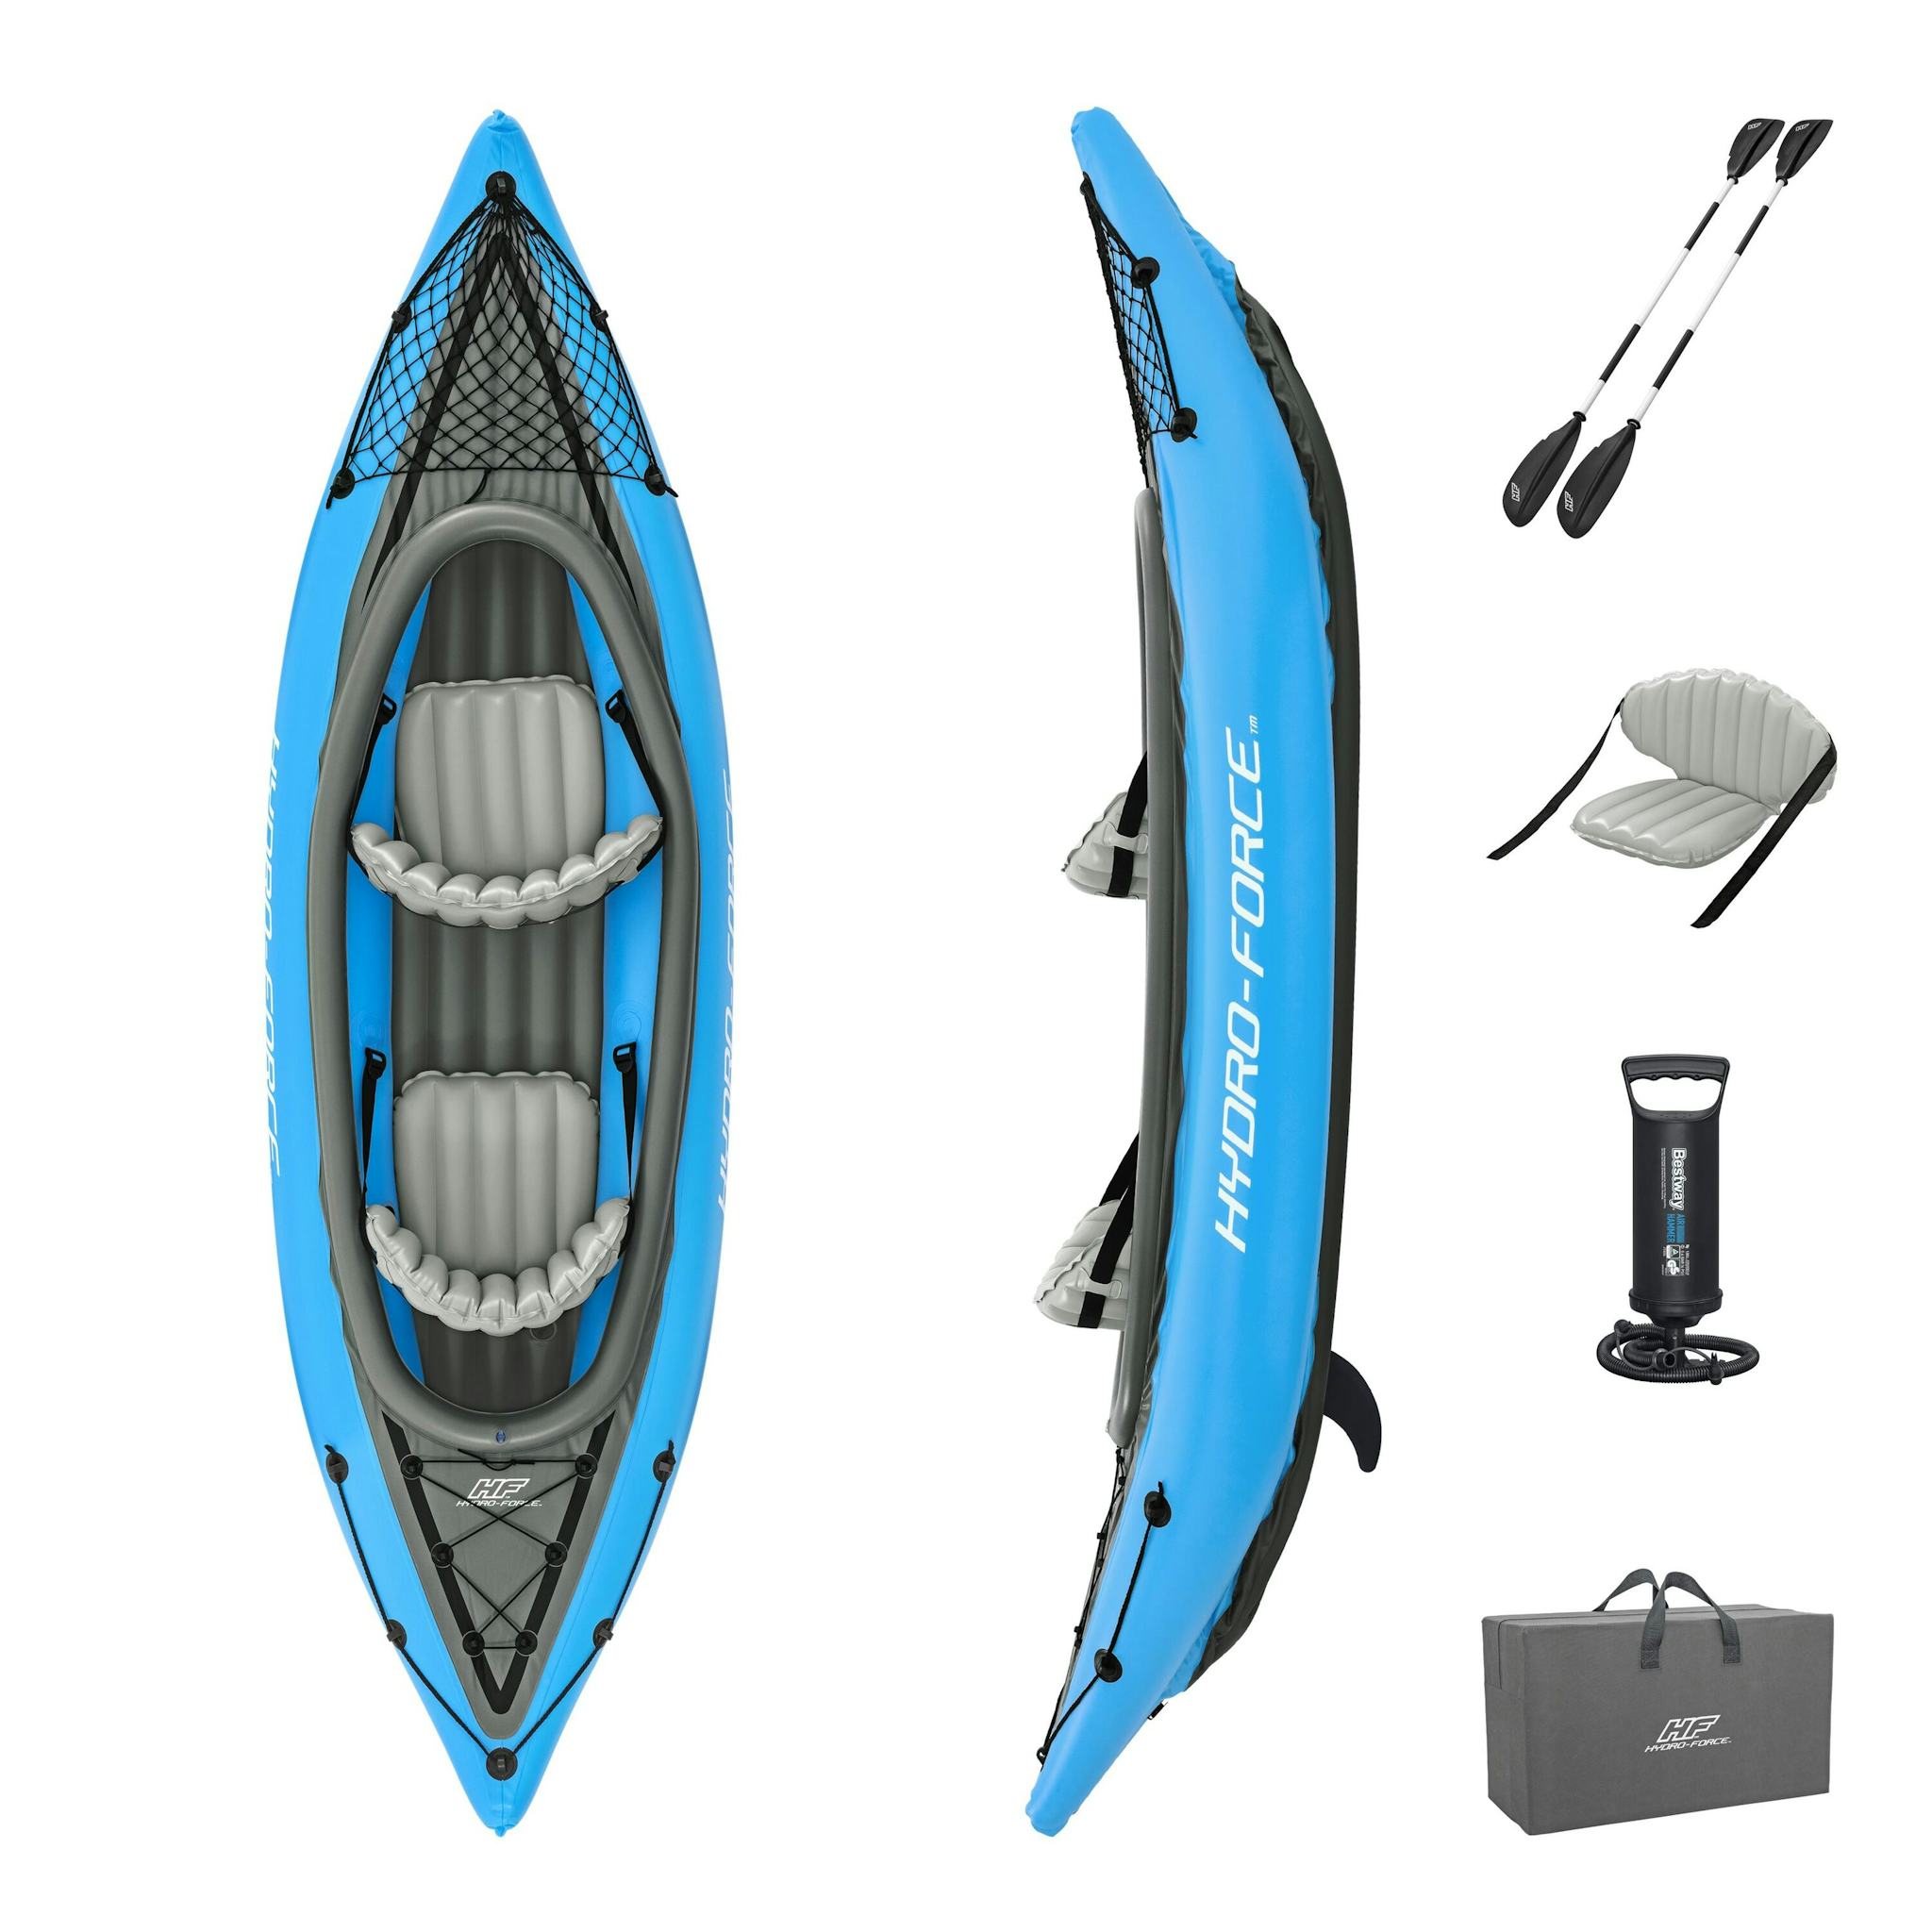 Sports d'eau Kayak gonflable Cove Champion X2 Hydro-Force™ 331 x 88cm, 2 places, 180 kg max, 2 pagaies, 2 ailerons amovibles et une pompe Bestway 2